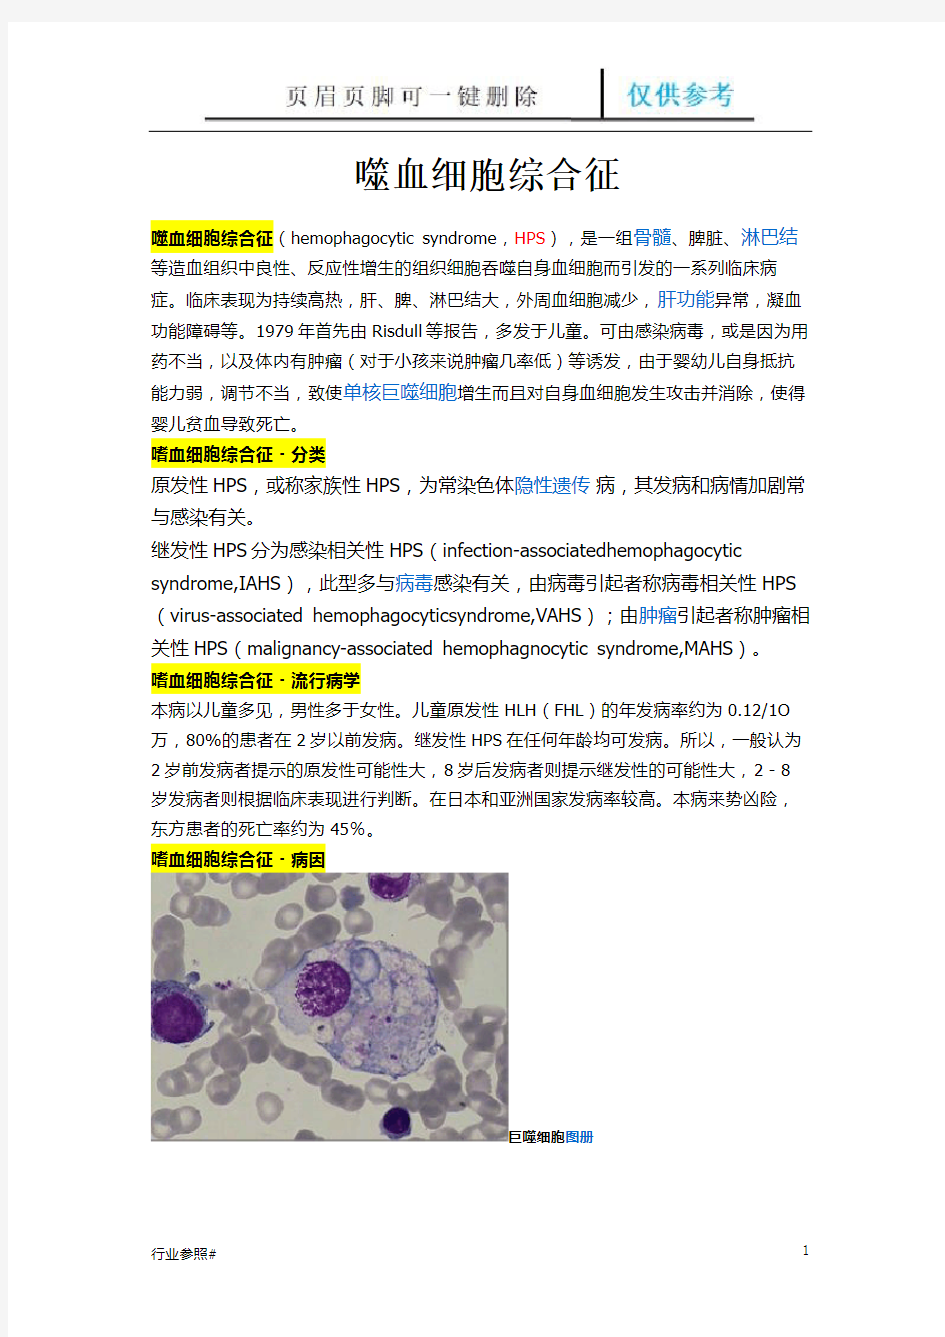 噬血细胞综合征(知识资料)